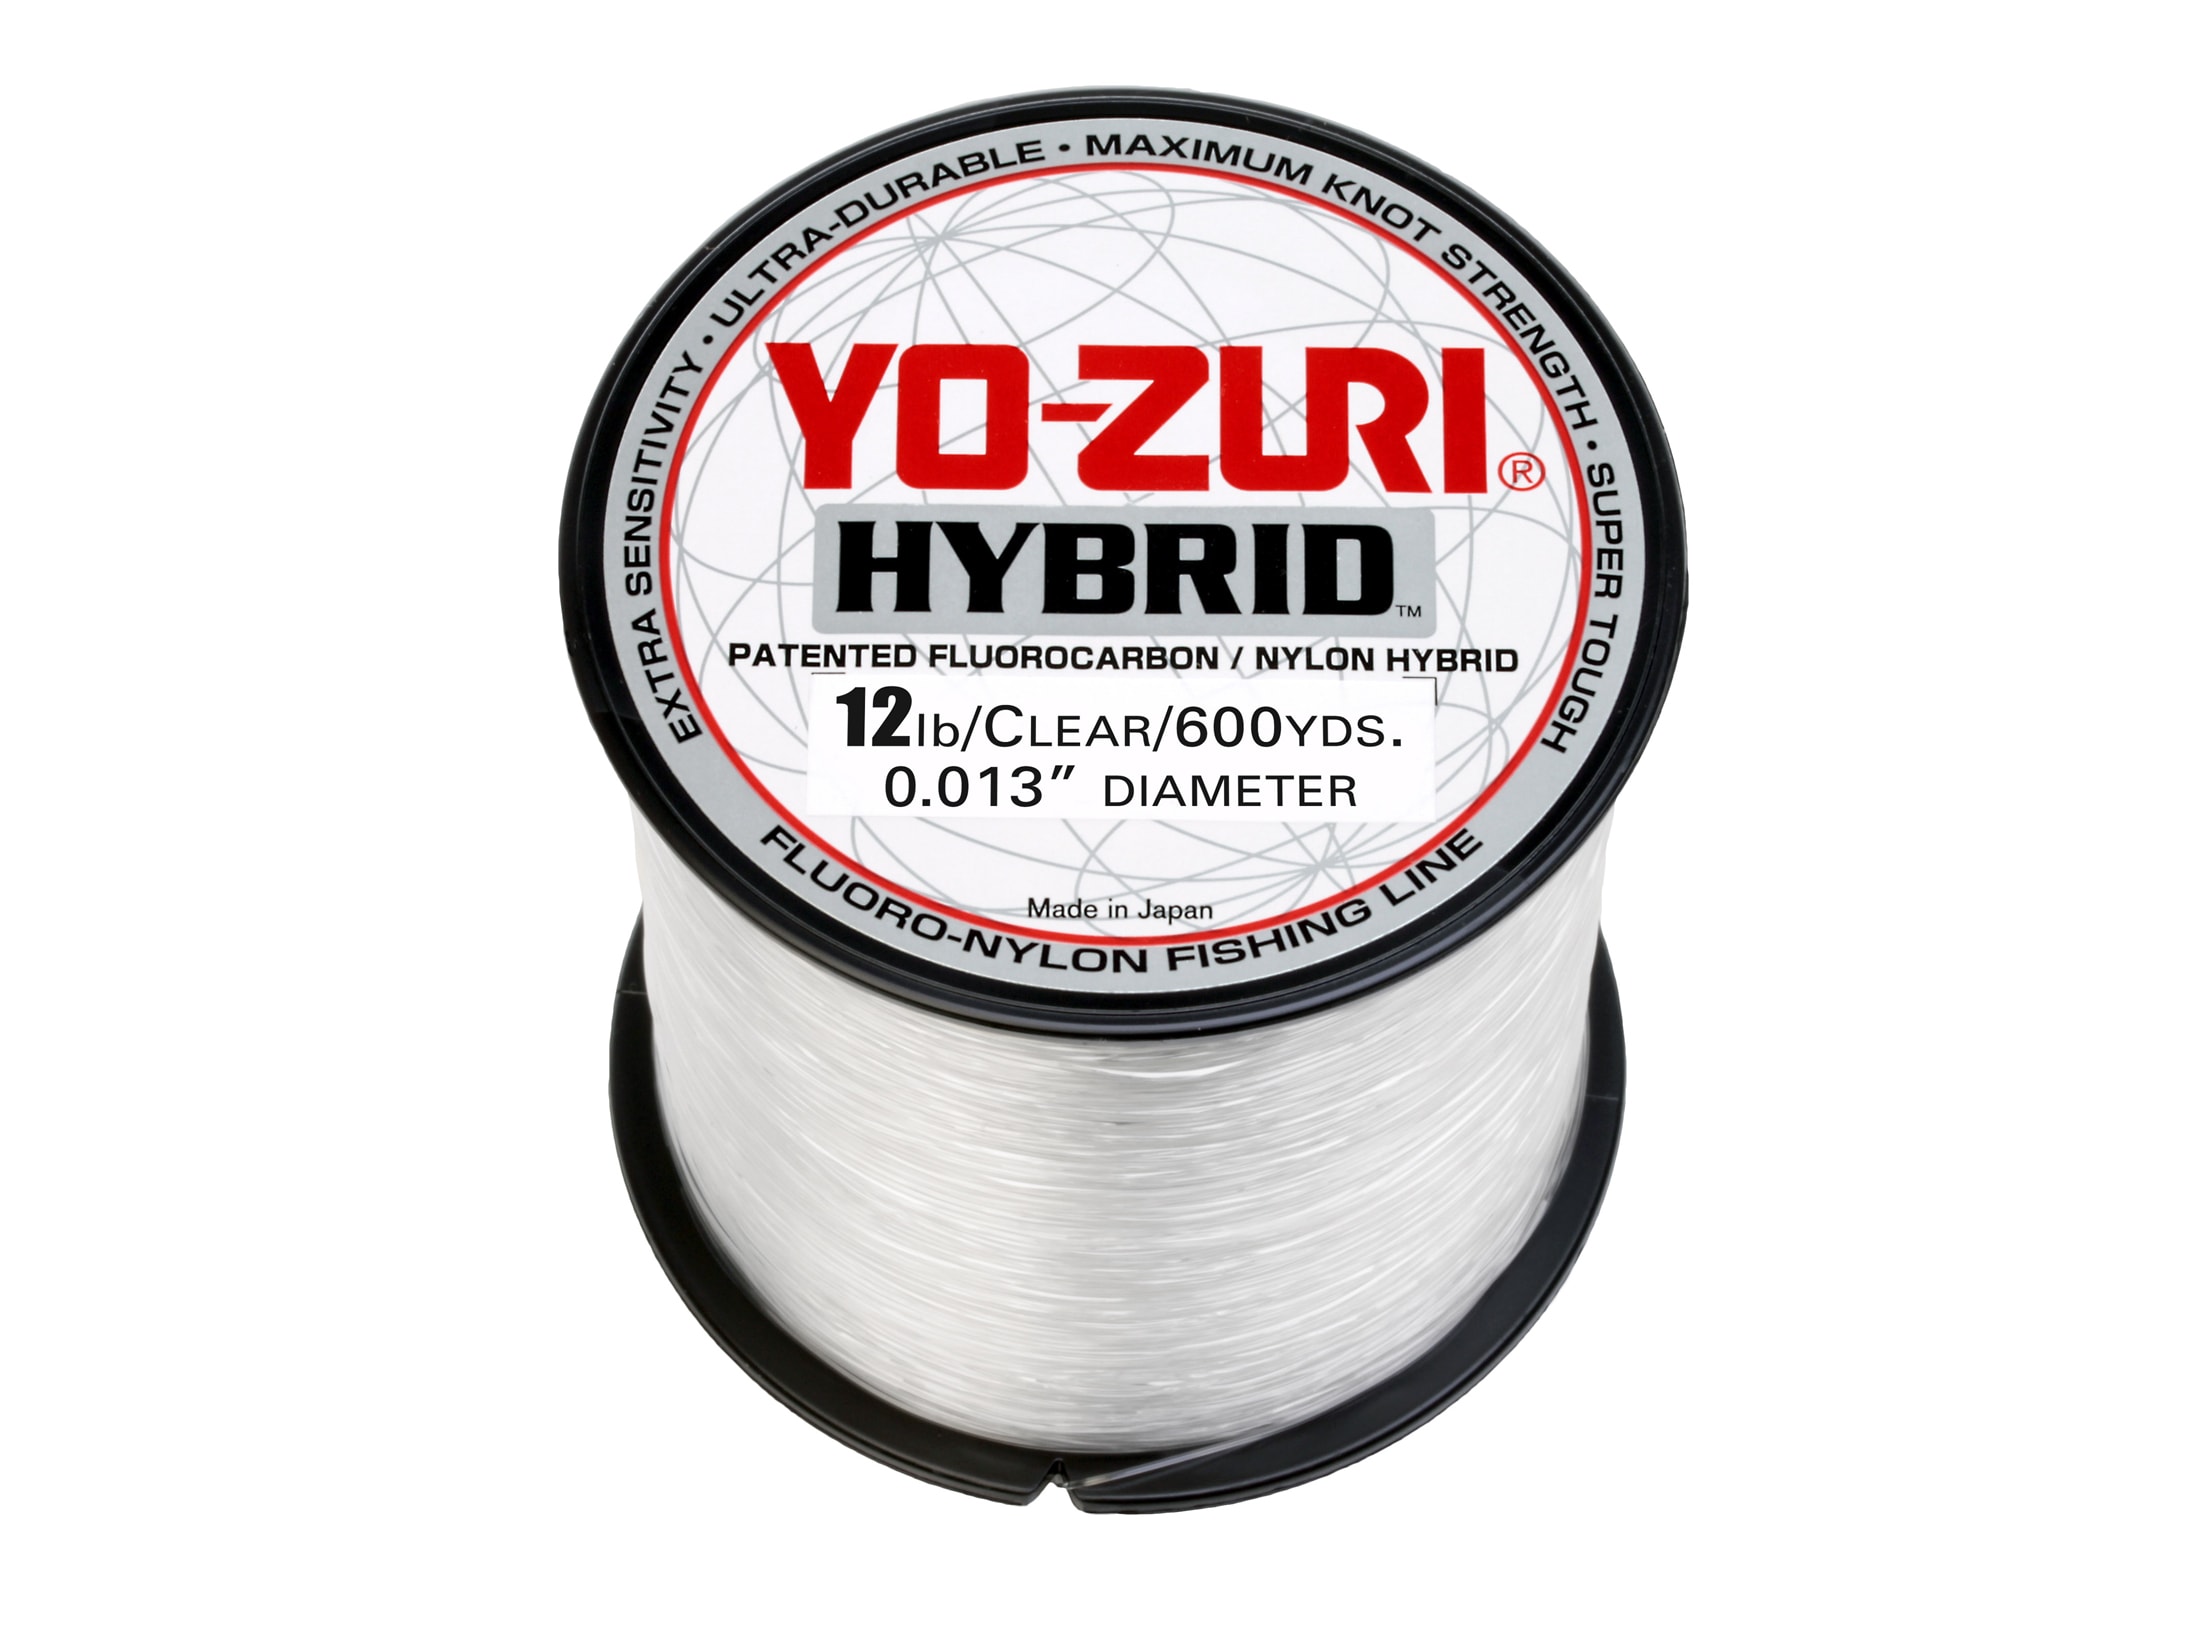 Yo-Zuri Hybrid Fluorocarbon Fishing Line 20lb 600yd Clear